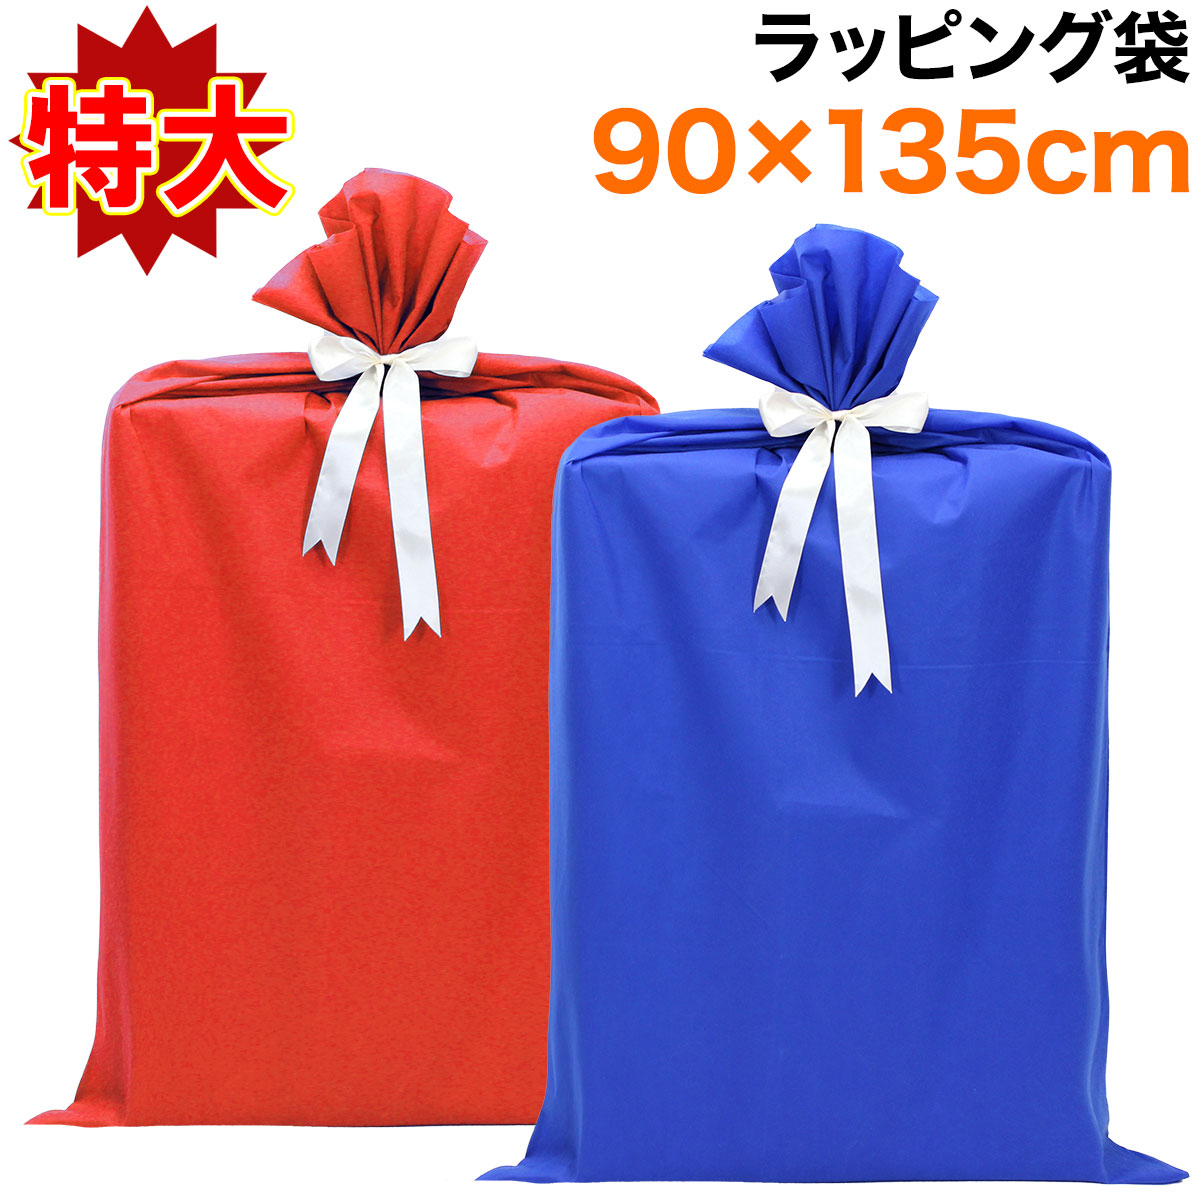 【エントリーでP10倍】 プレゼント 袋 ギフト 大きい リボン ラッピング 贈り物 バッグ 特大 誕生日 おしゃれ 135×90cm Mサイズ